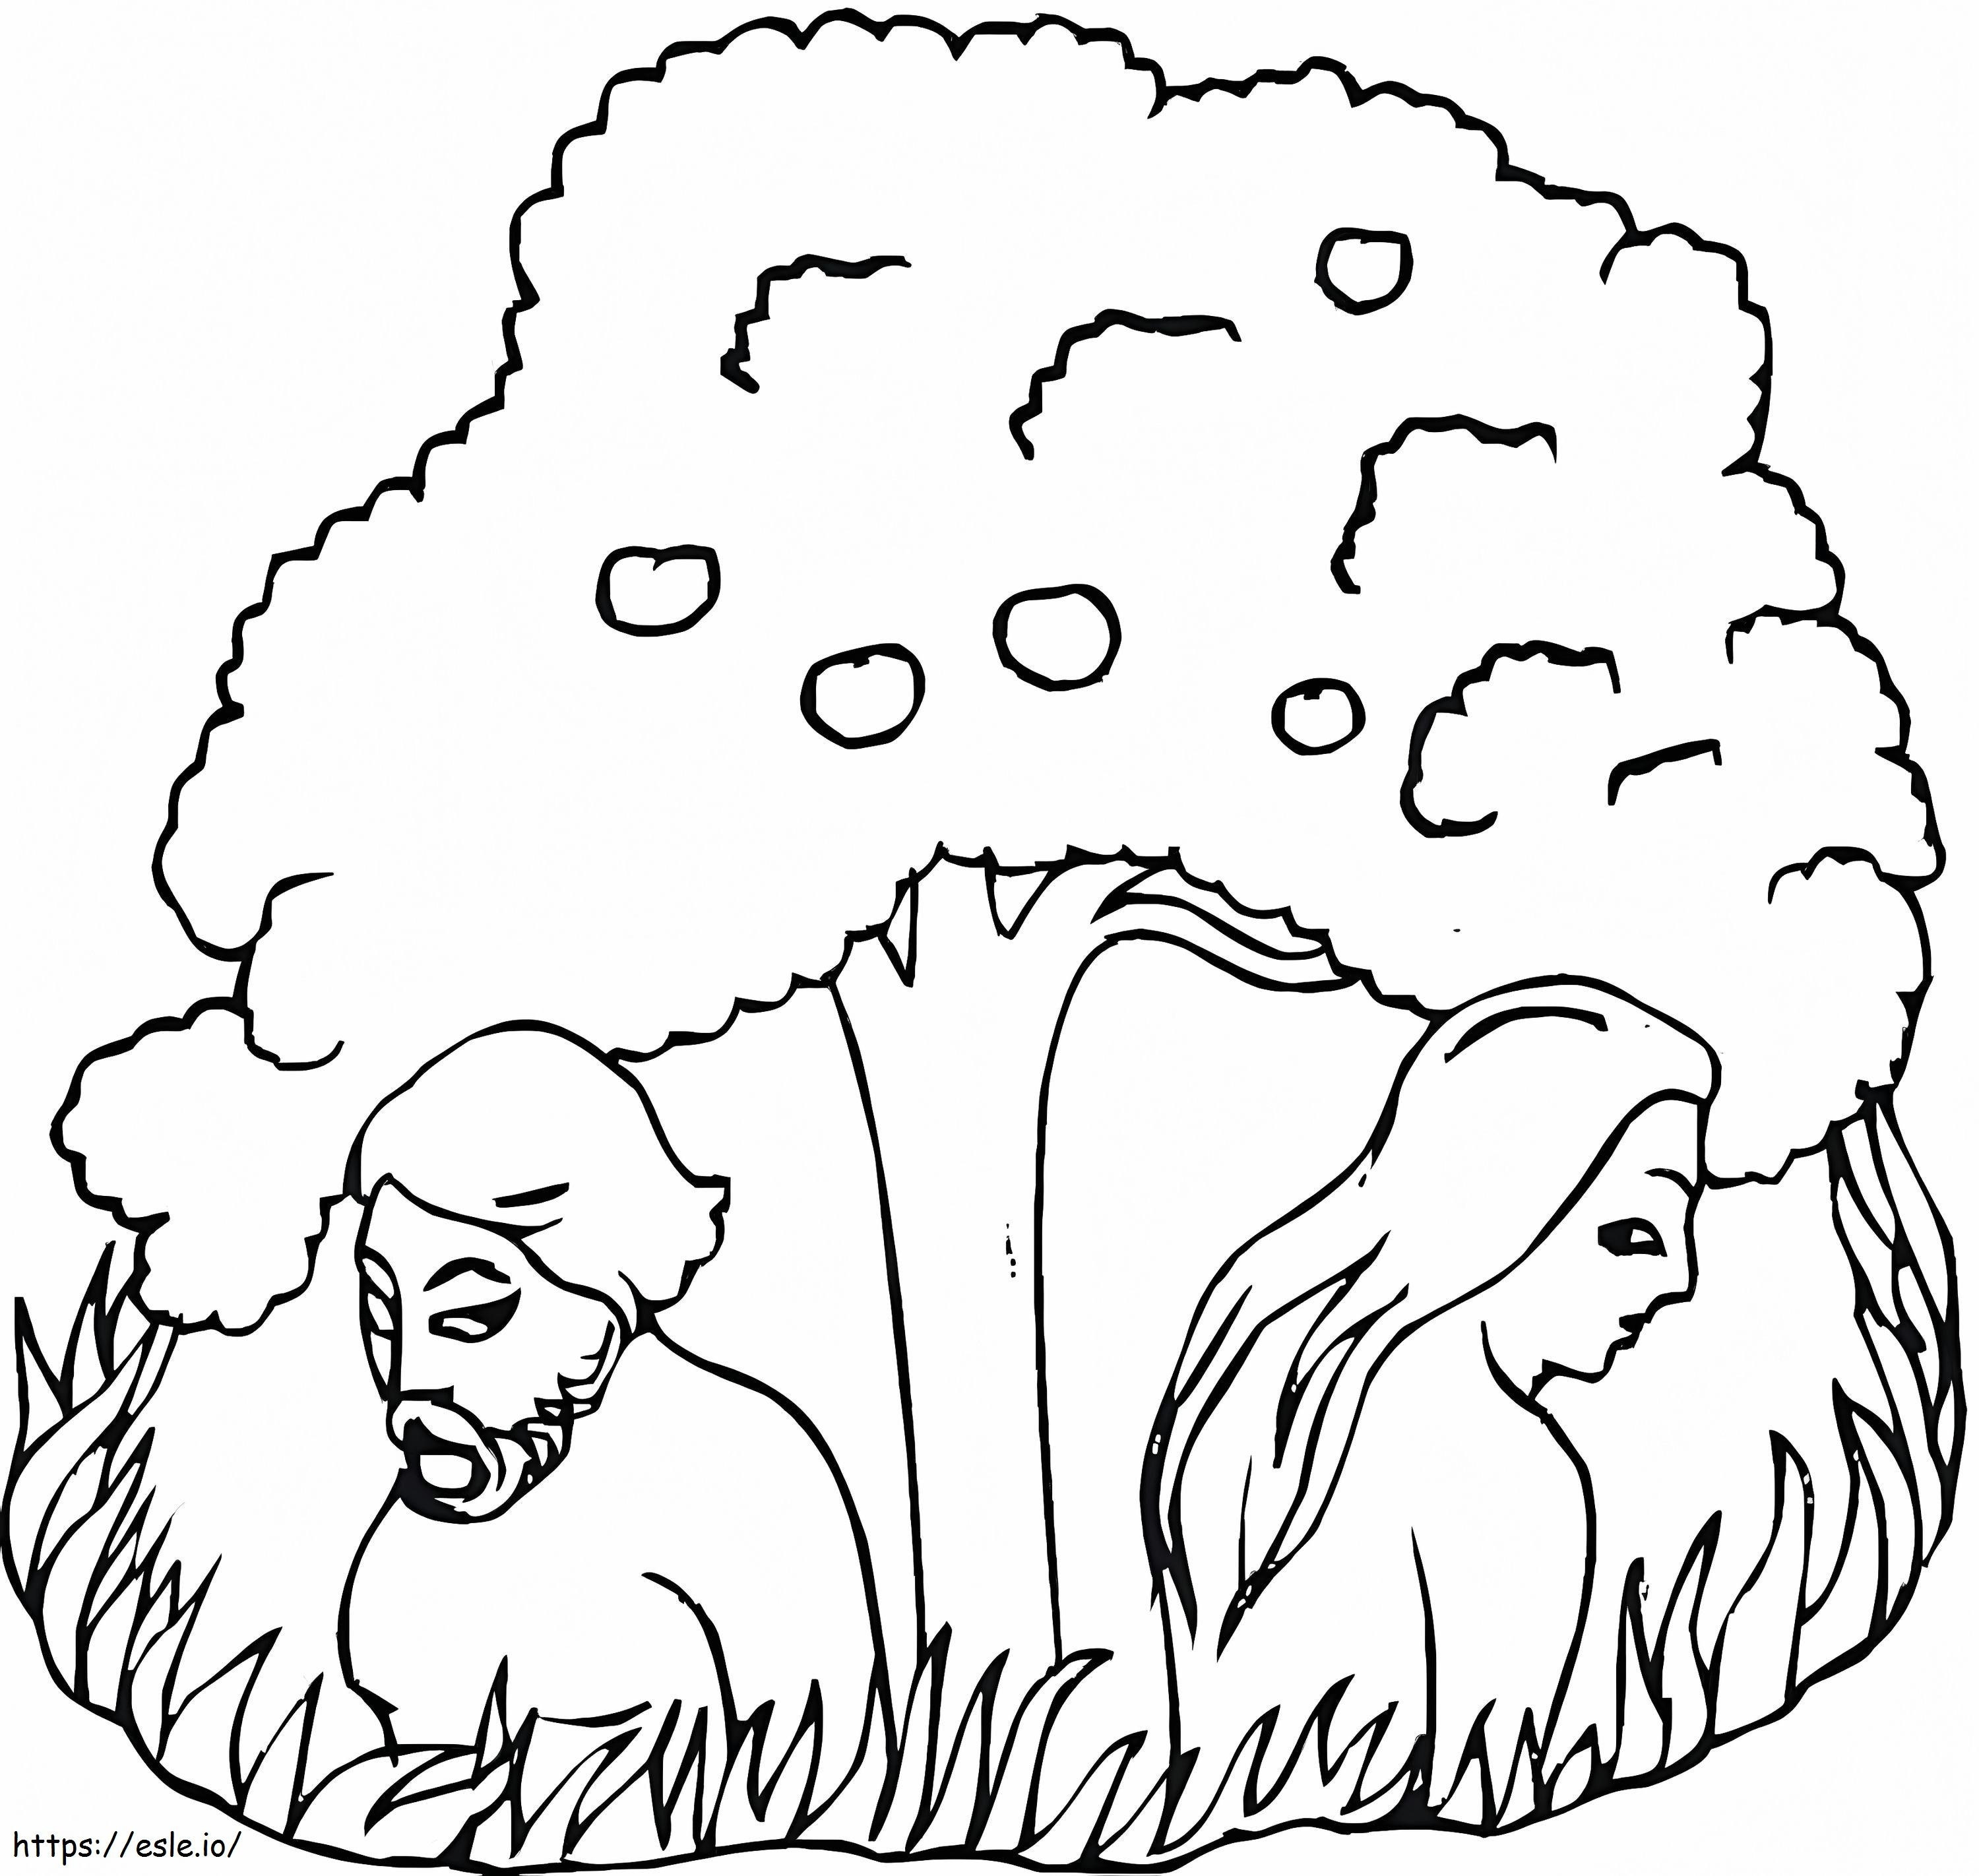 Adamo ed Eva sotto l'albero da colorare